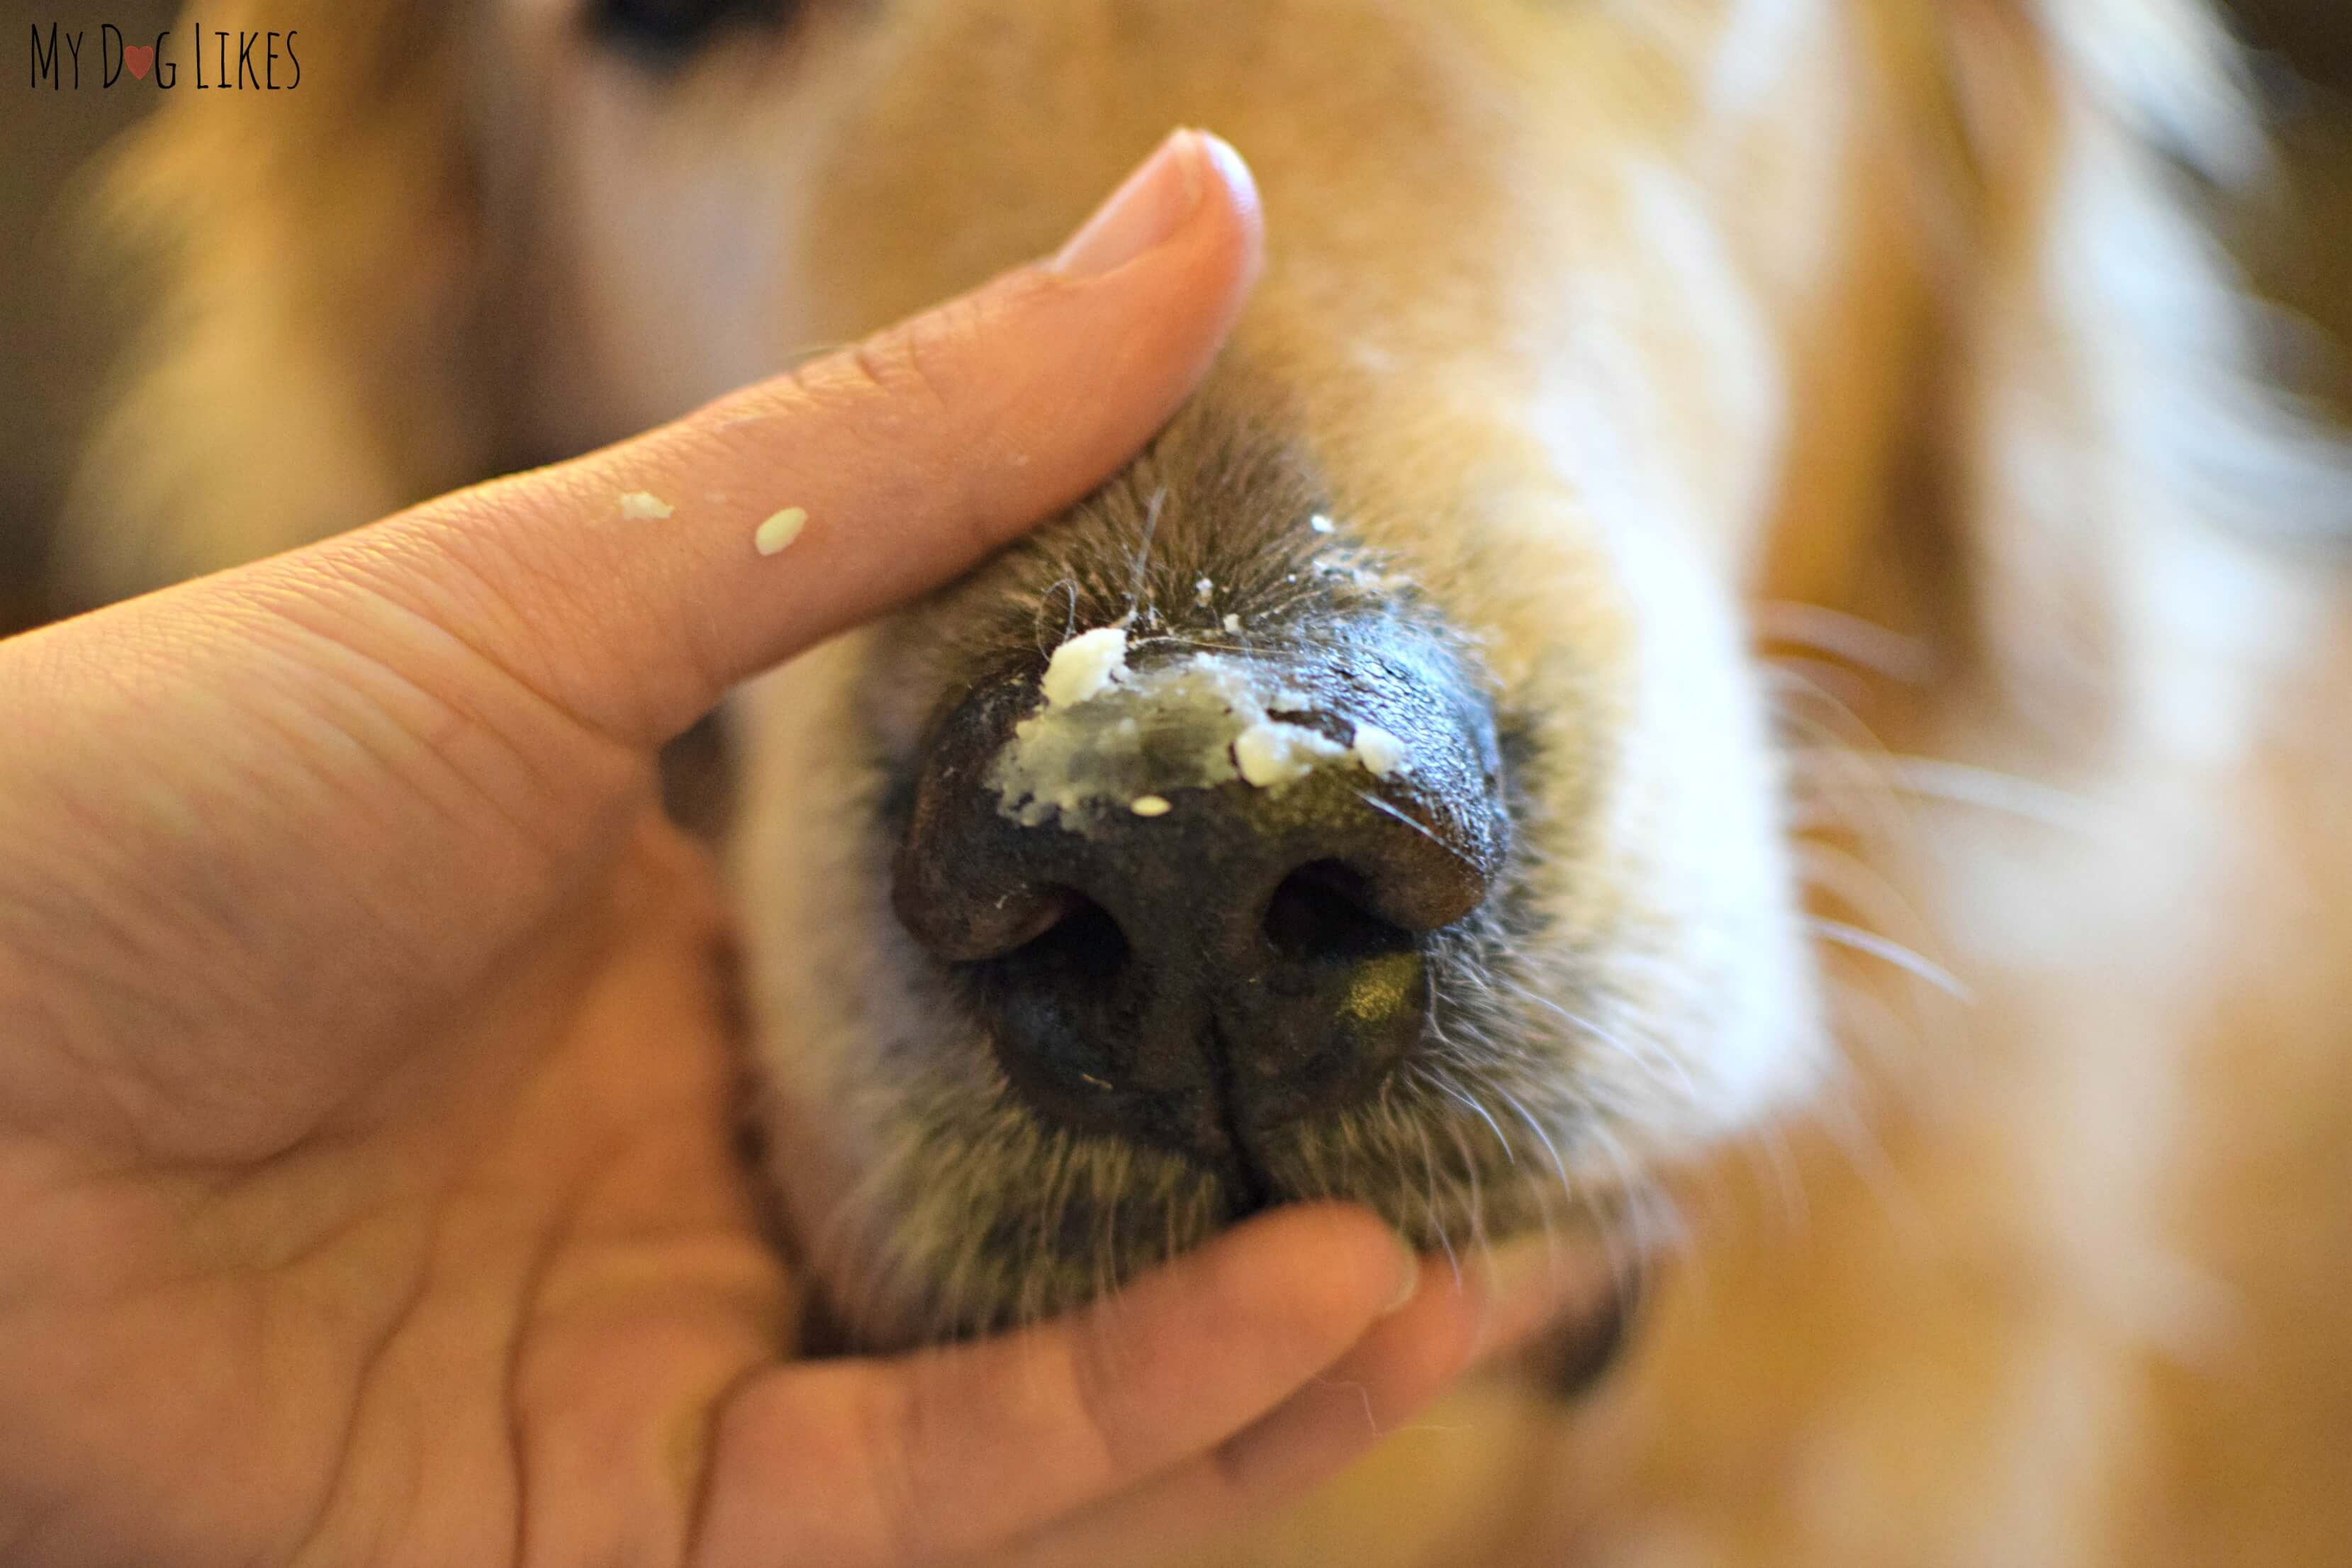 Почему у собаки могут появиться сопли: бывает ли насморк у домашних питомцев